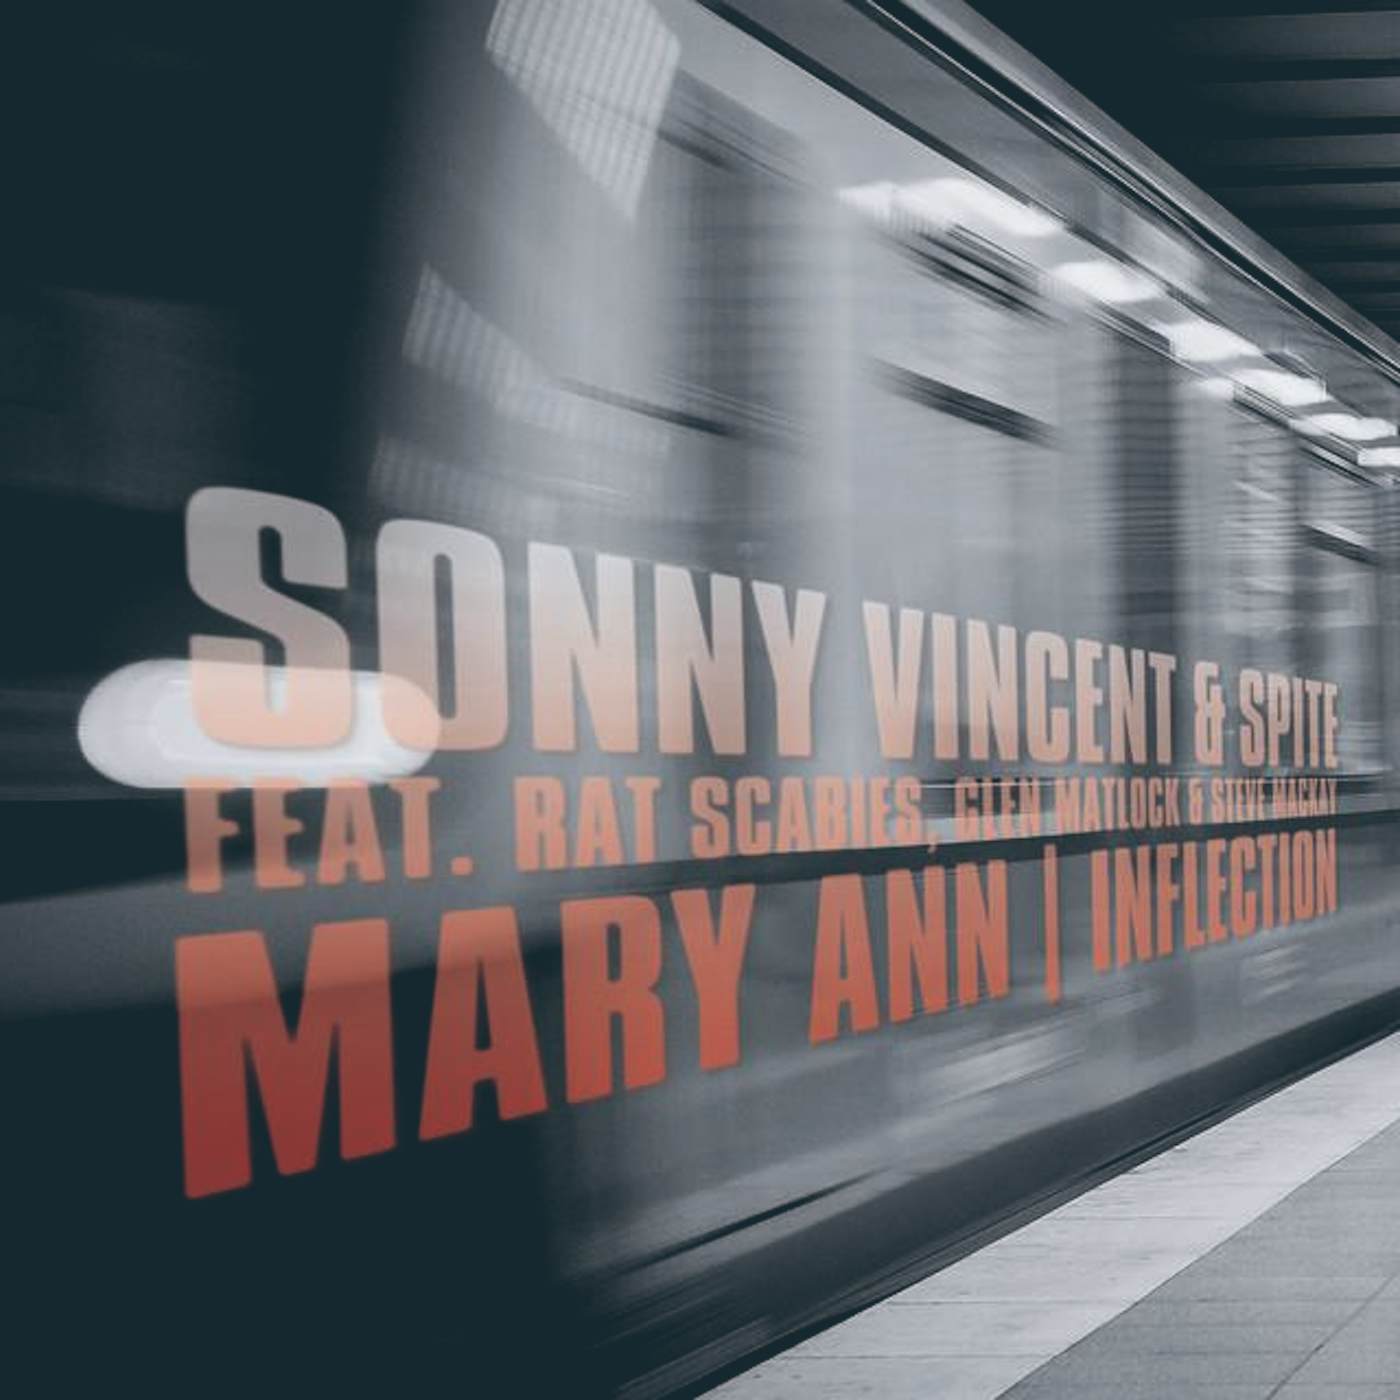 Sonny Vincent & Spite